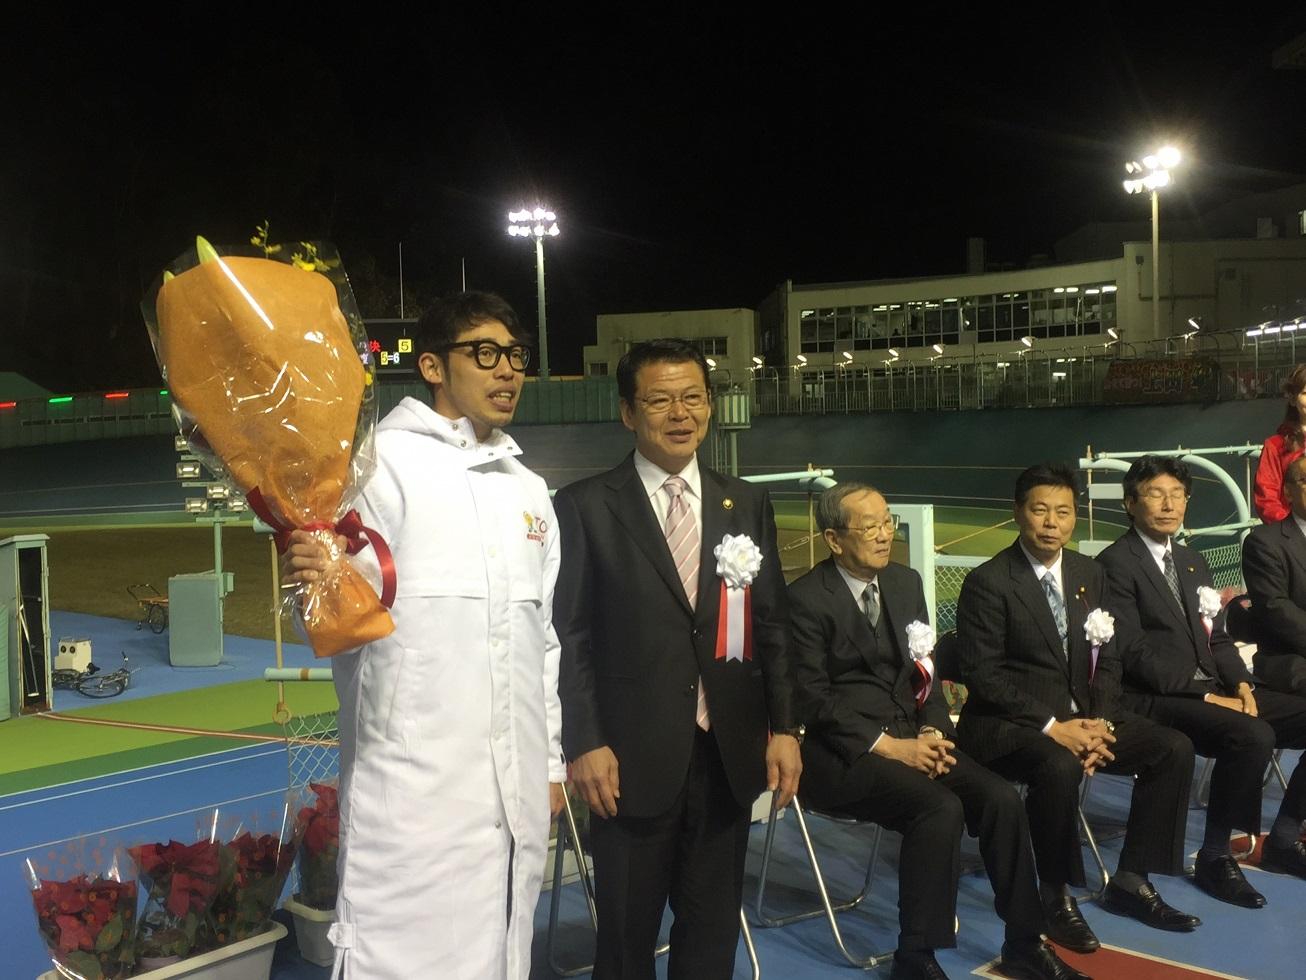 2017年12月10日花束を右手で持った早坂秀悟選手と横に並ぶ市長の写真